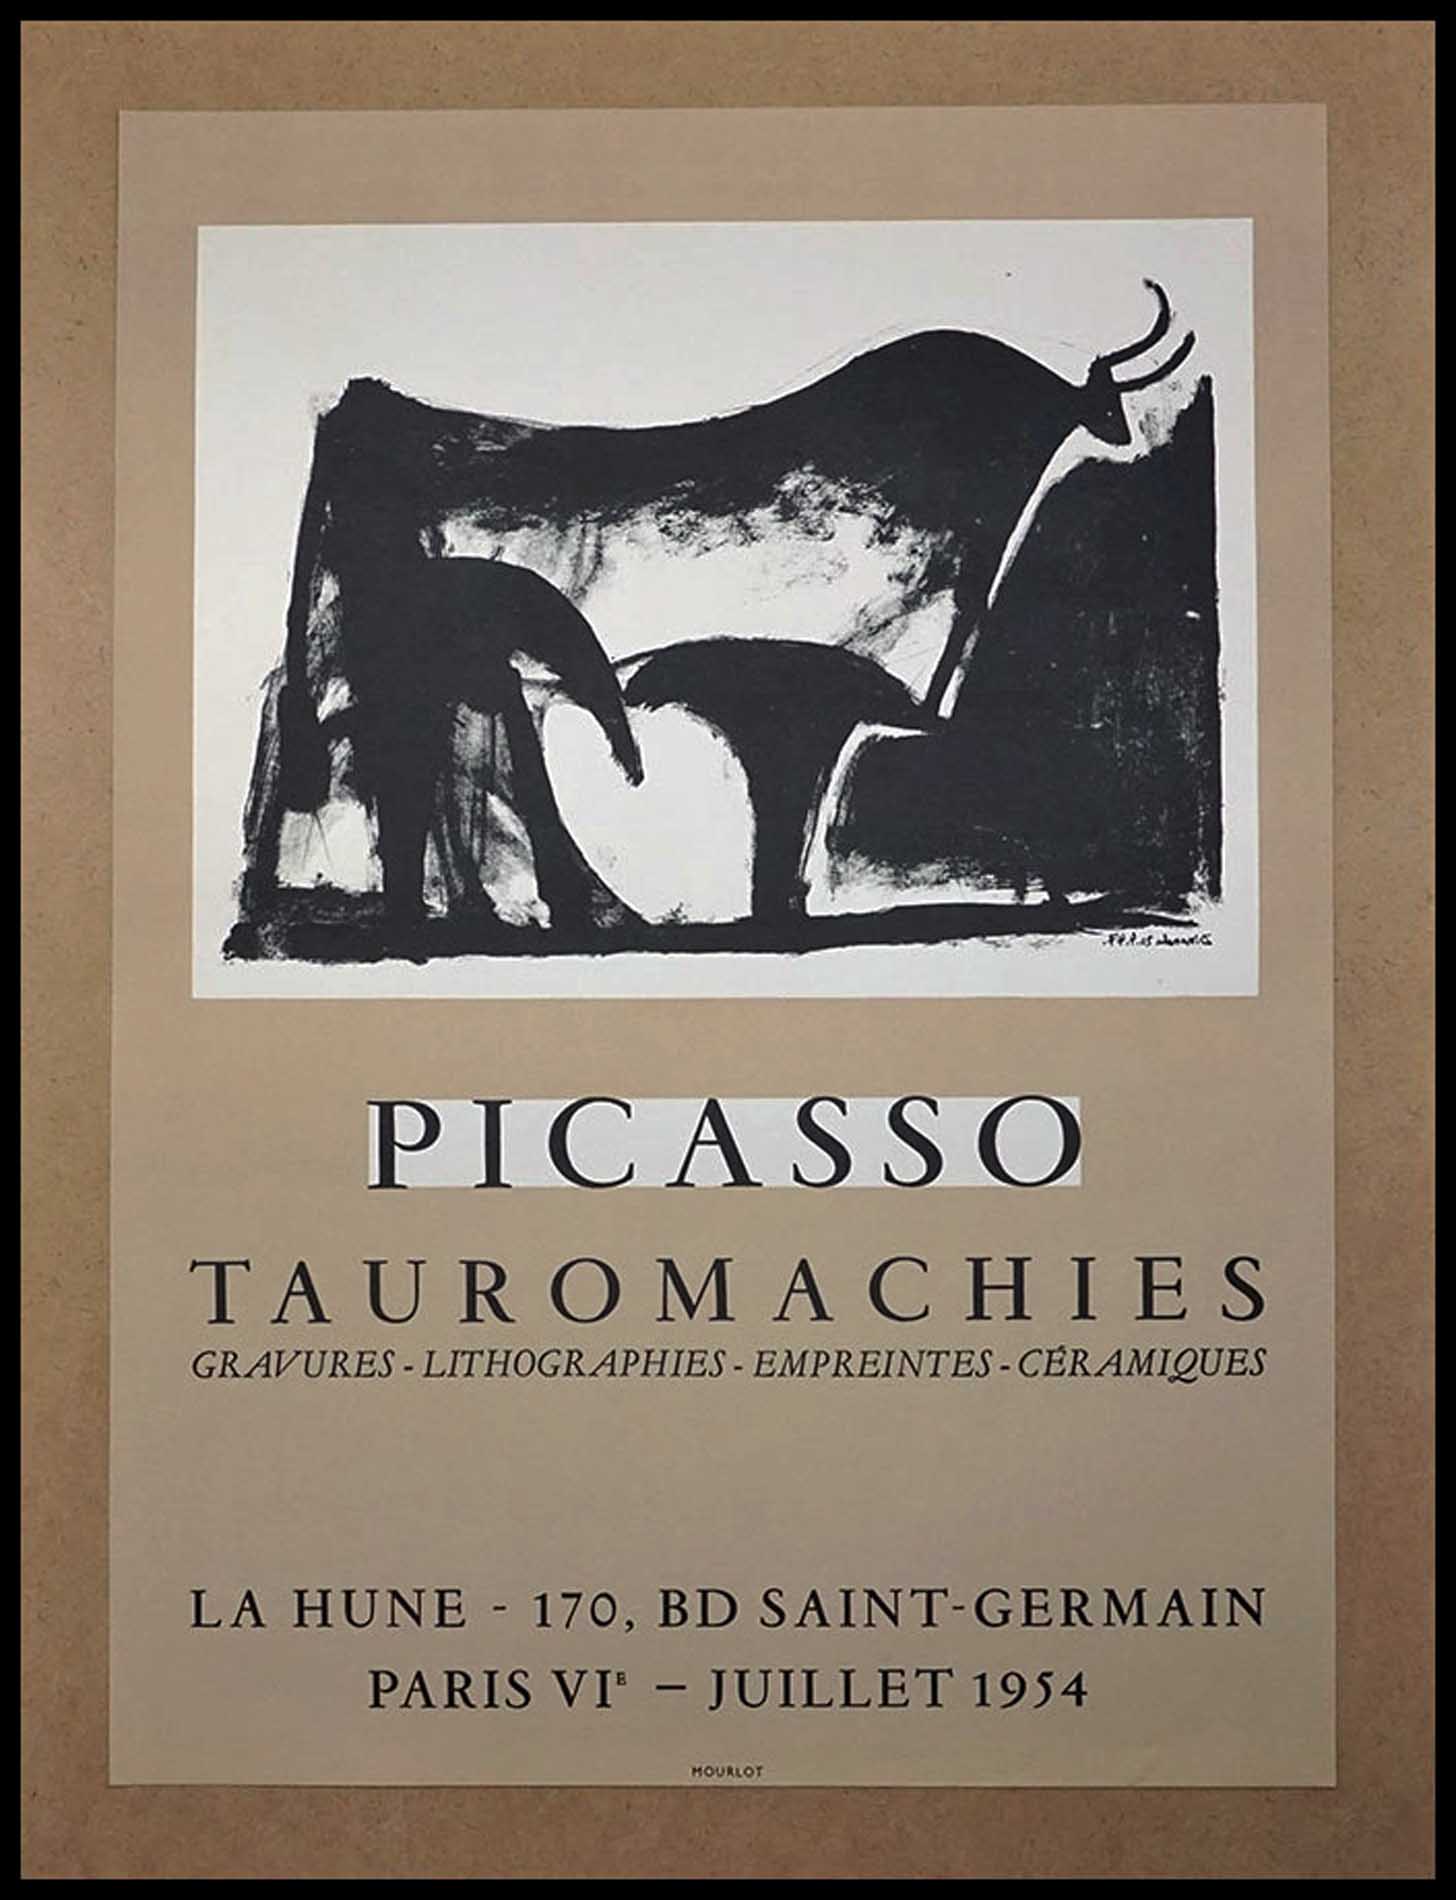 Pablo Picasso, Tauromachies, La Hune